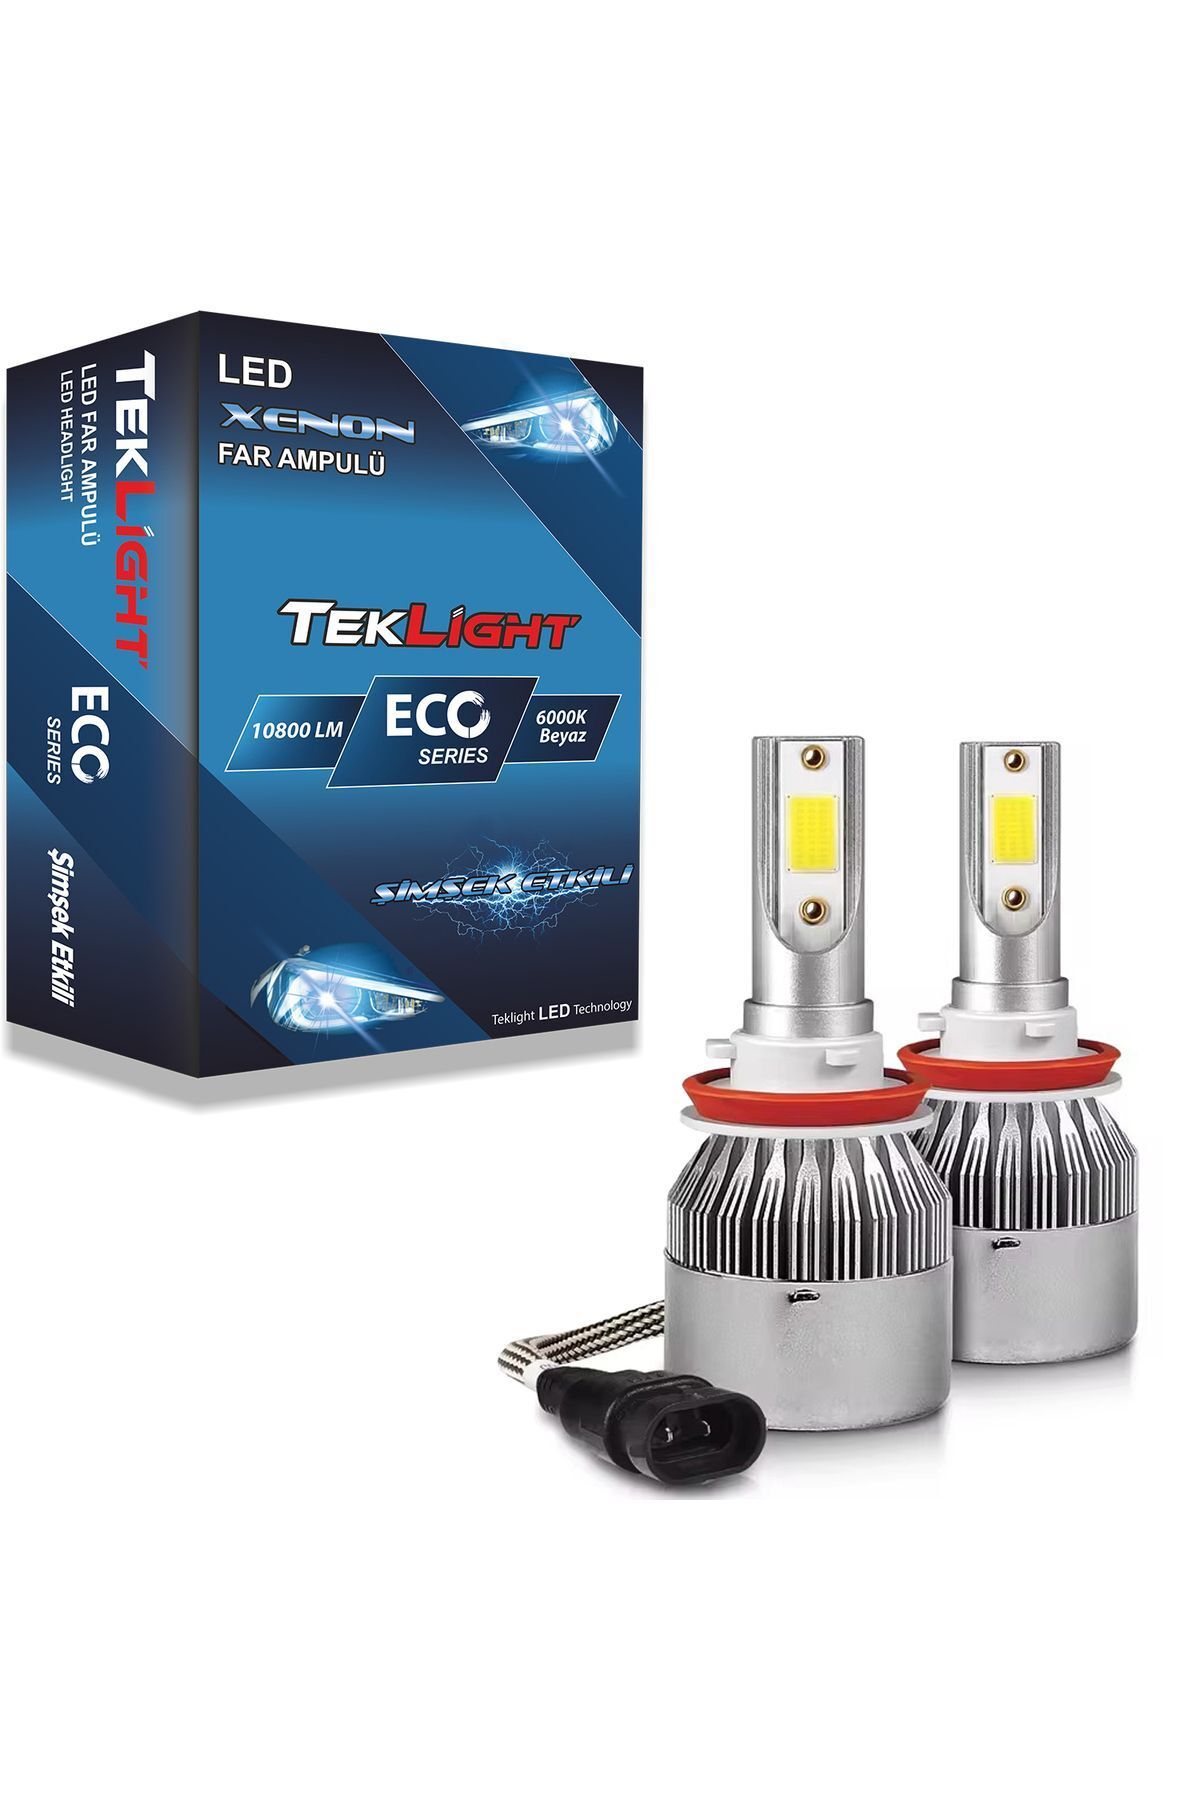 Teklight Eco (HB3) 9005 Led Xenon Far Ampulü 10800 Lümen Beyaz Zenon Şimşek Etkili